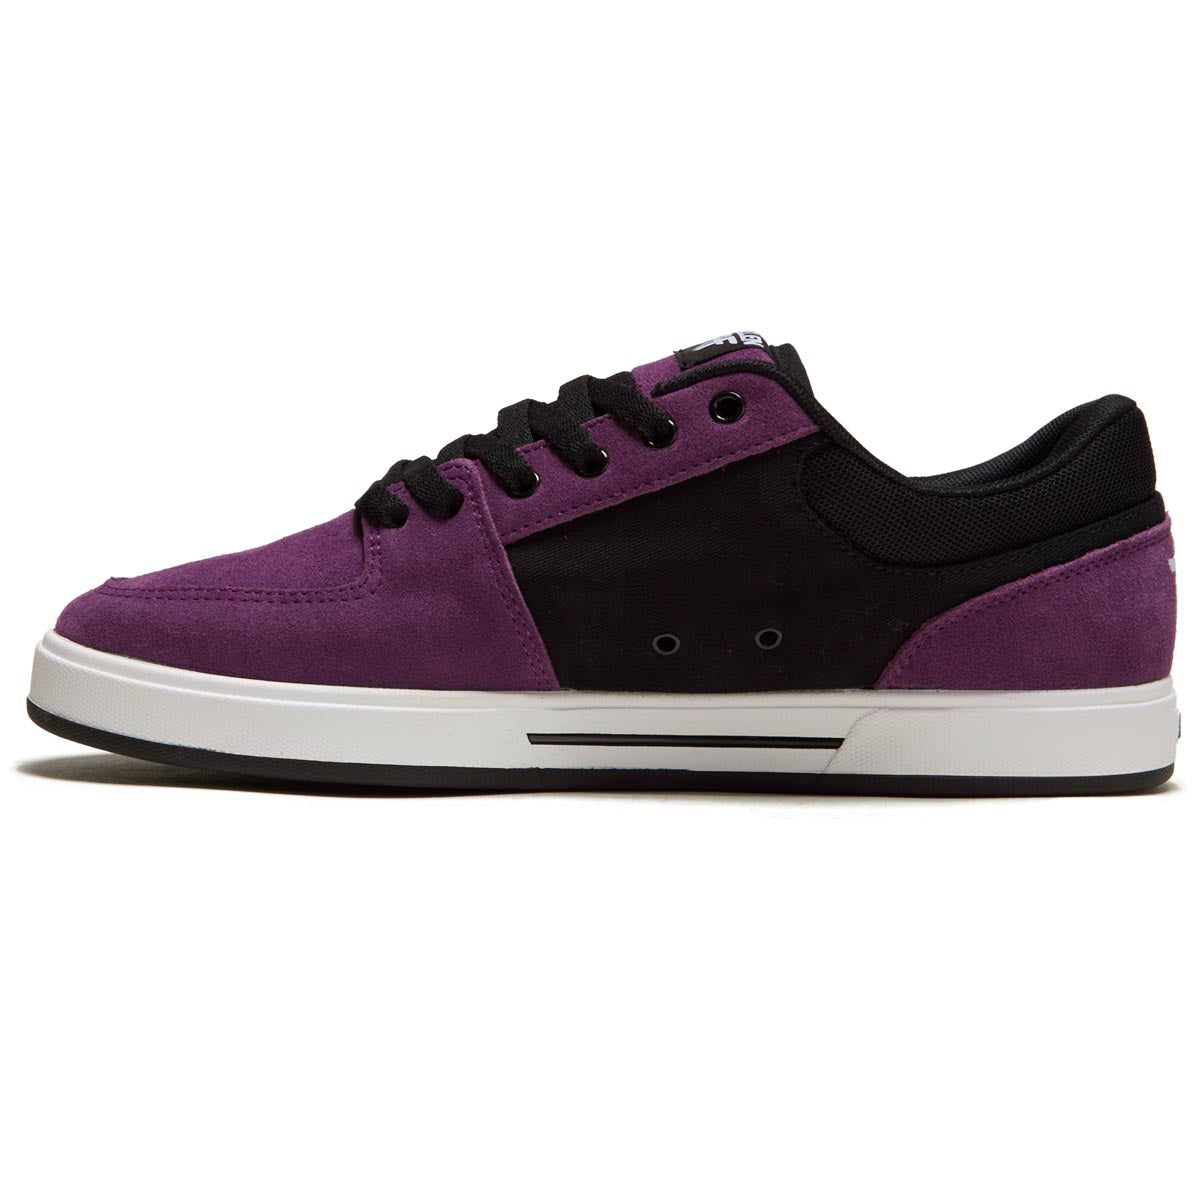 Fallen Patriot Shoes - Purple/Black image 2